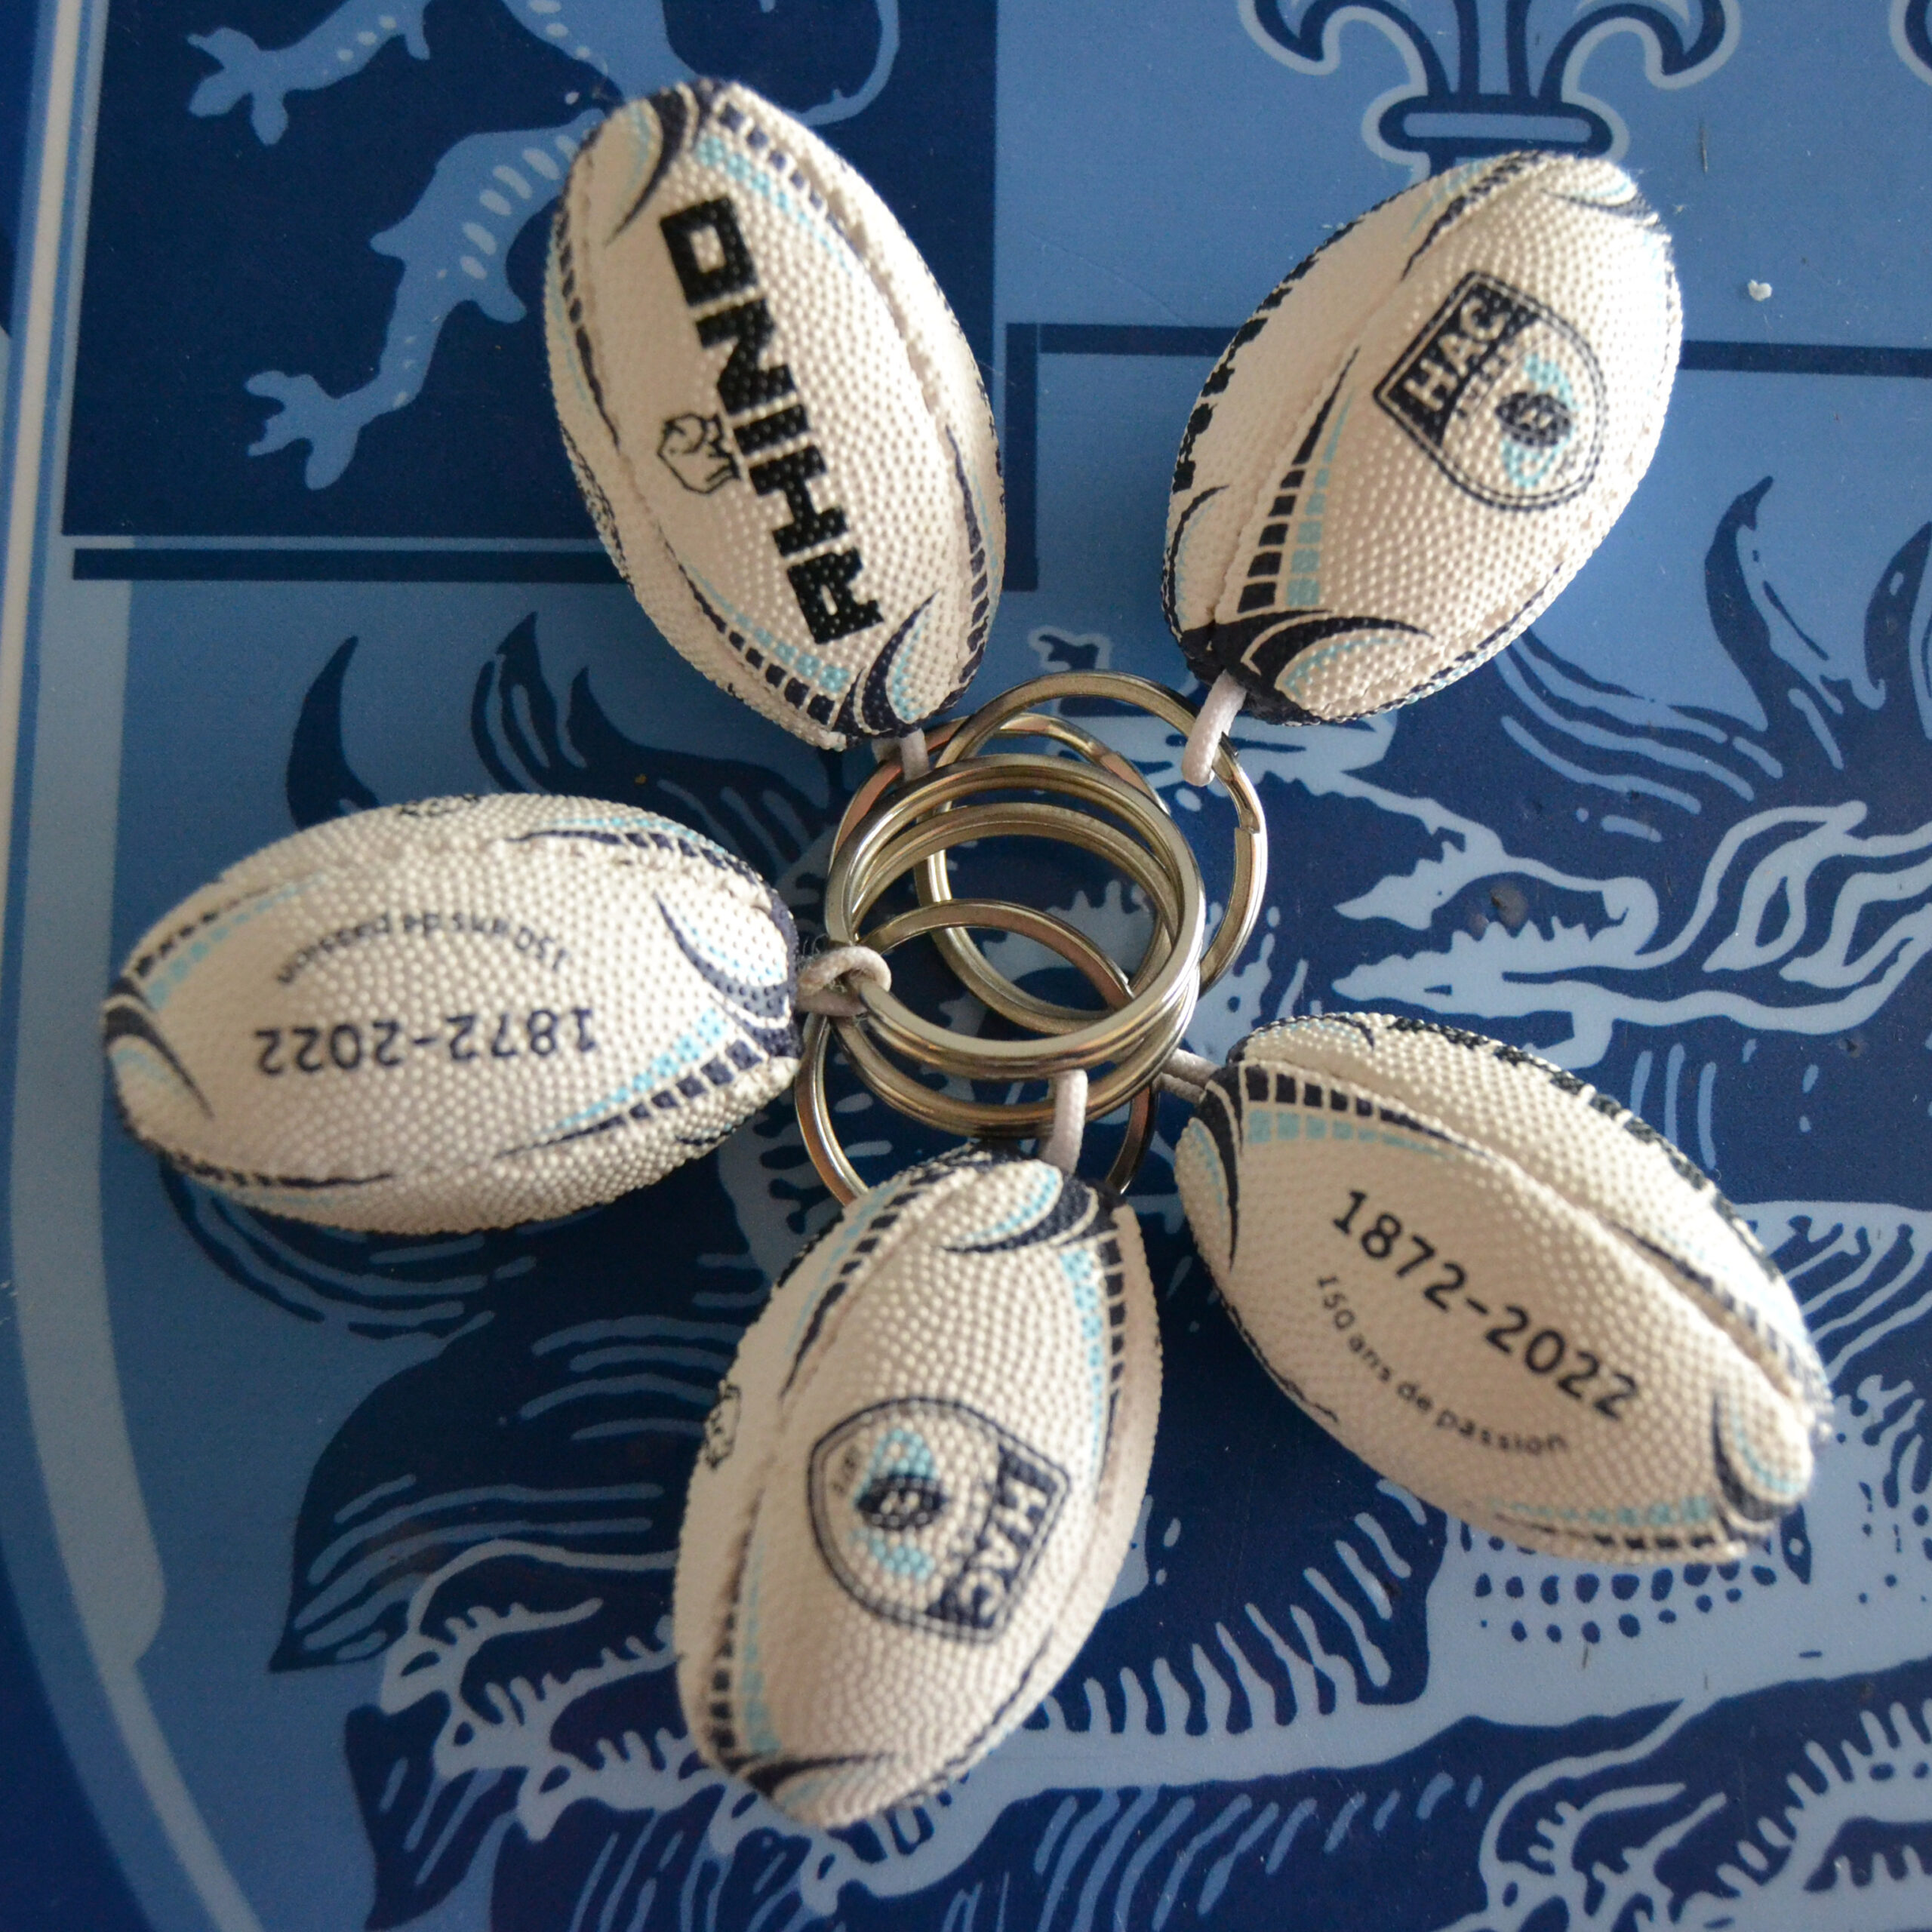 Ballon Vintage avec socle - Hac Rugby